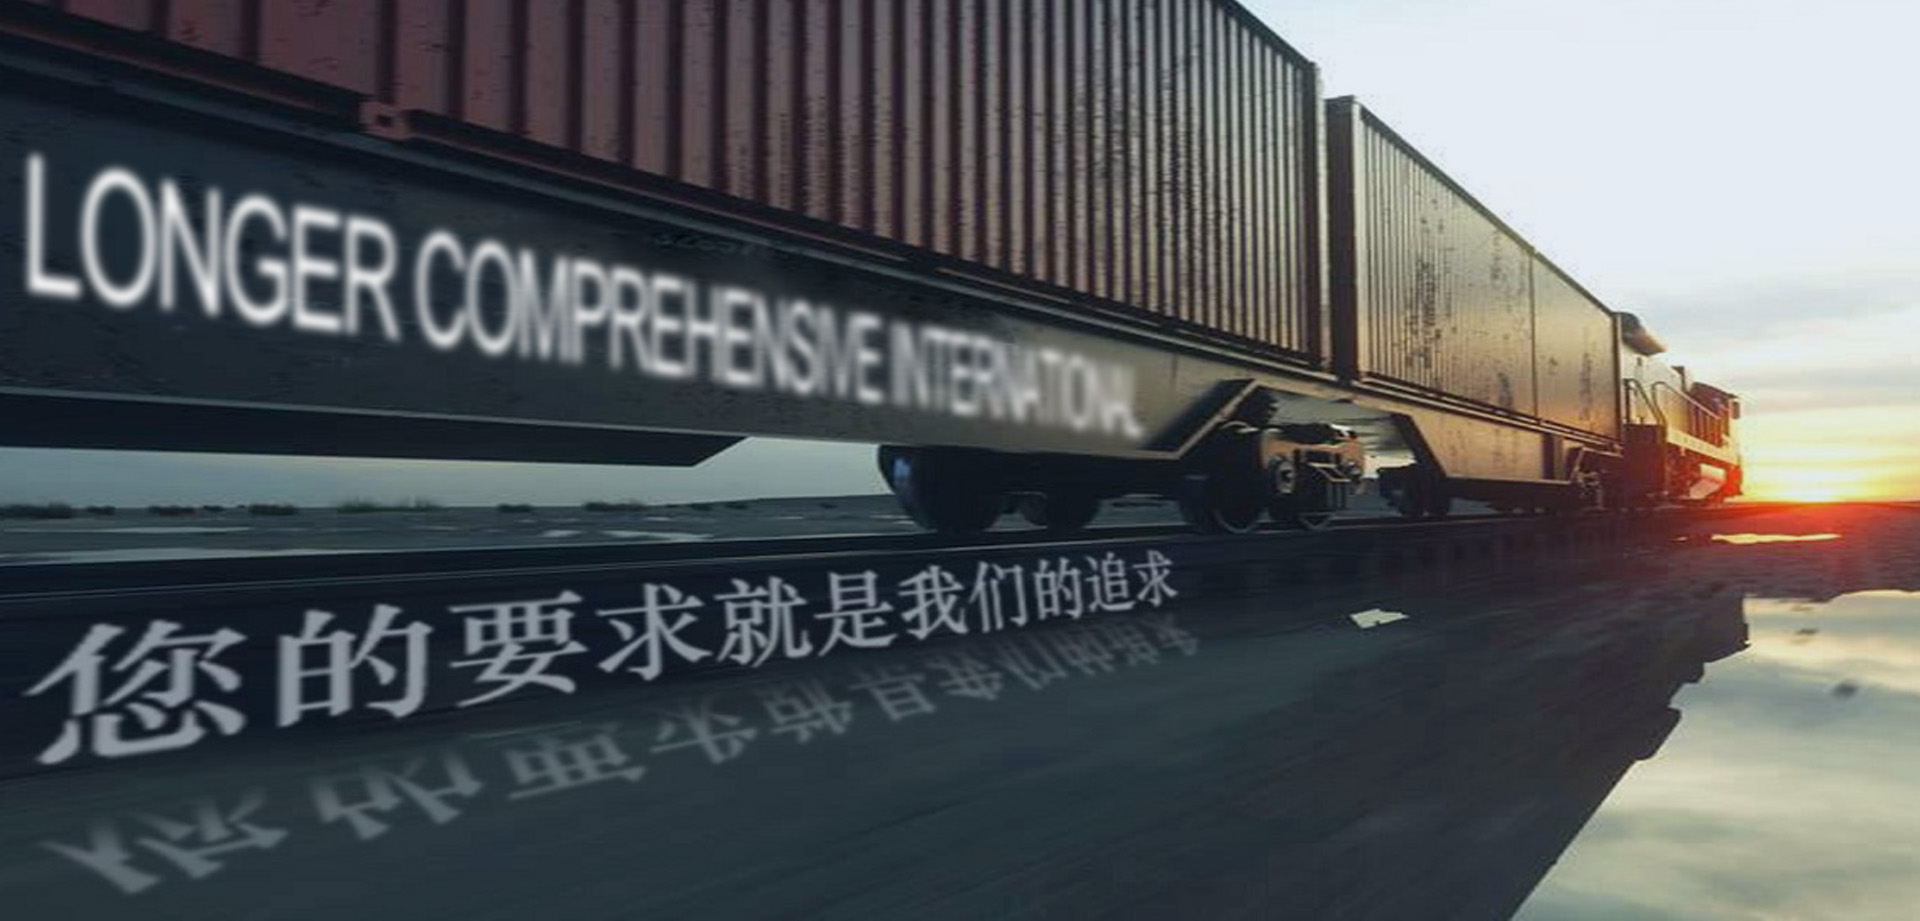 国际货物运输代理服务||江苏公海贵宾会国际货运代理有限公司